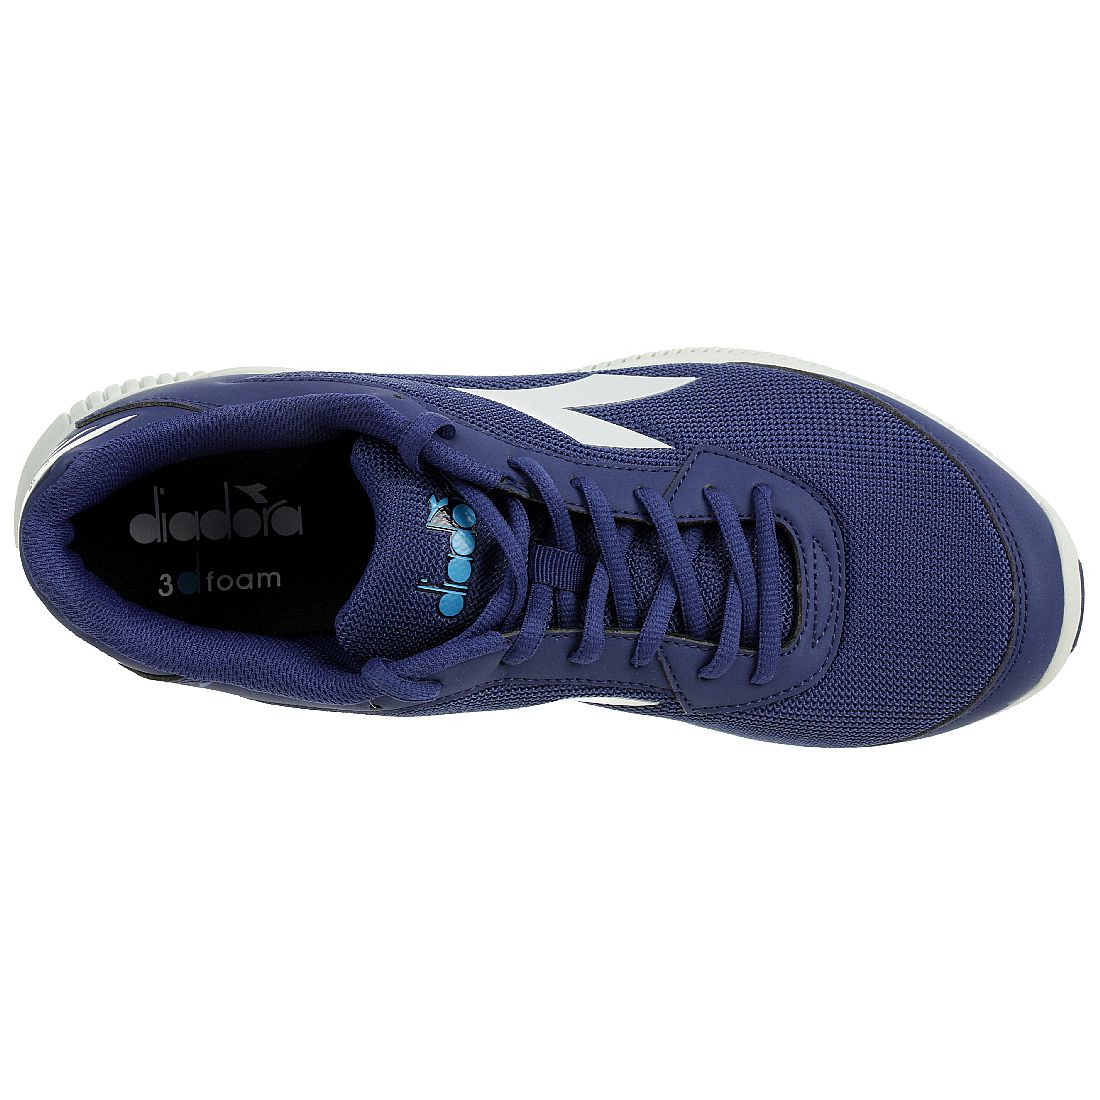 Diadora Herren Eagle 2 Unisex Sneaker Turnschuh Blau